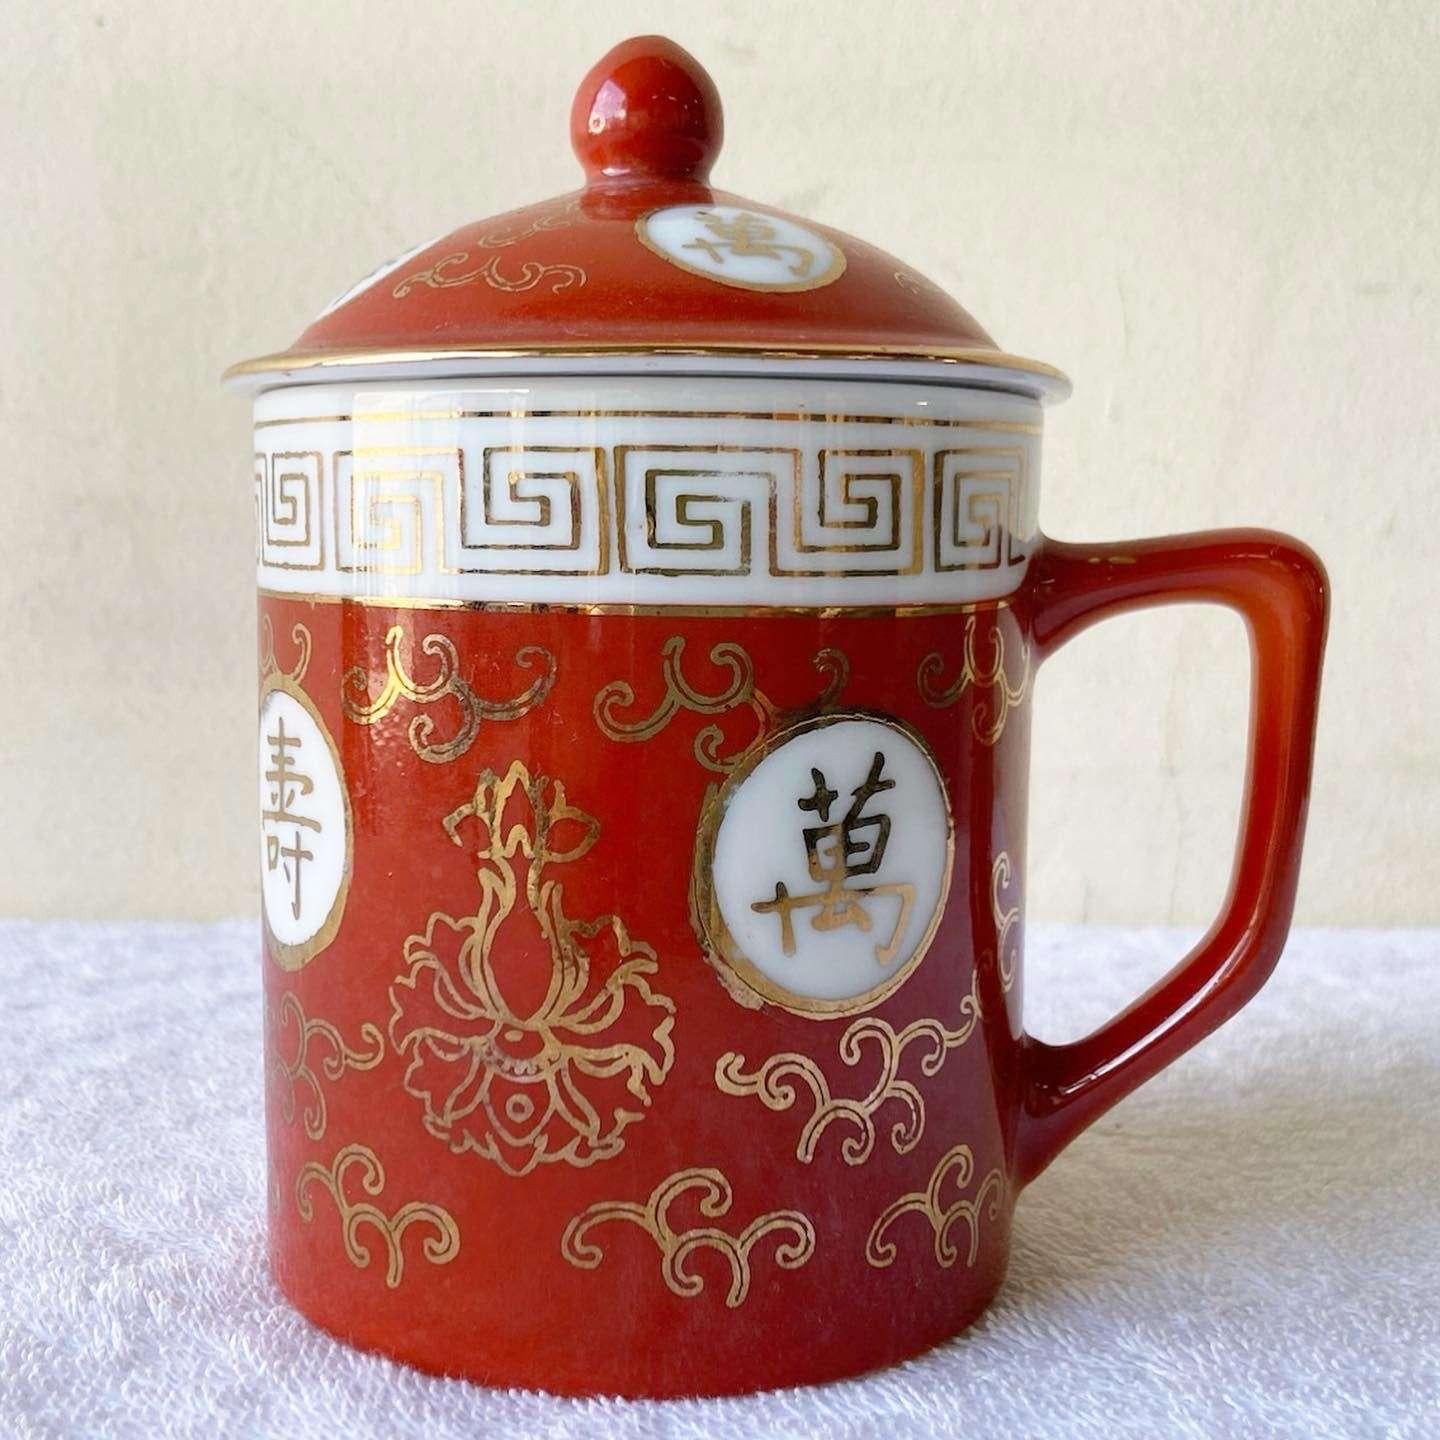 Wunderschöne Teetasse aus chinesischem Porzellan mit Deckel. Mit einem handgemalten rot-goldenen Design.
